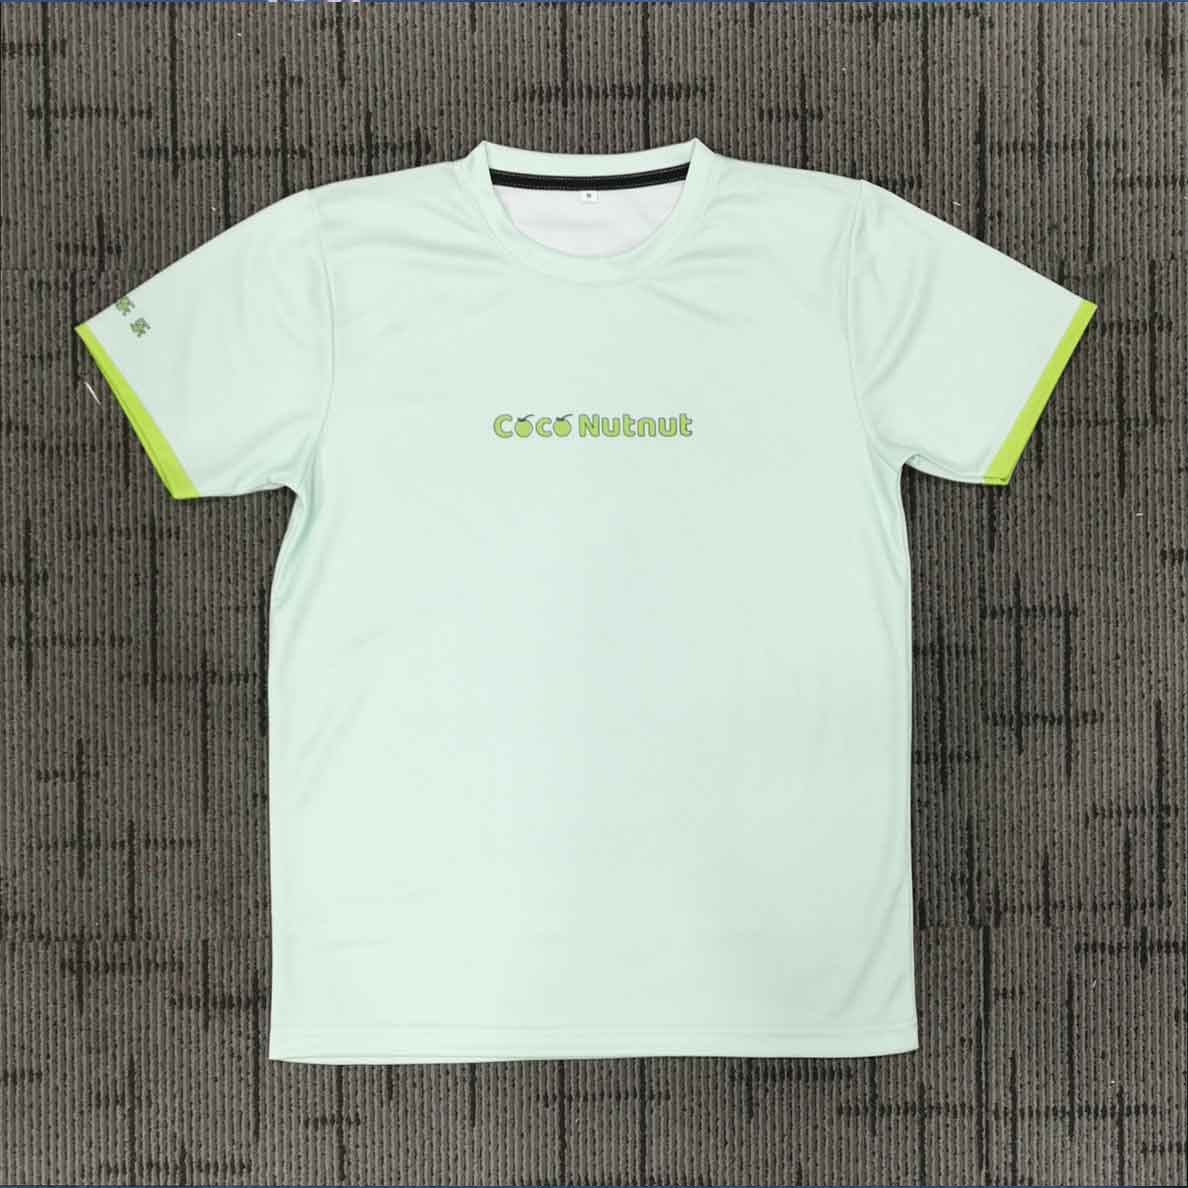 COCONUT sublimation t-shirt